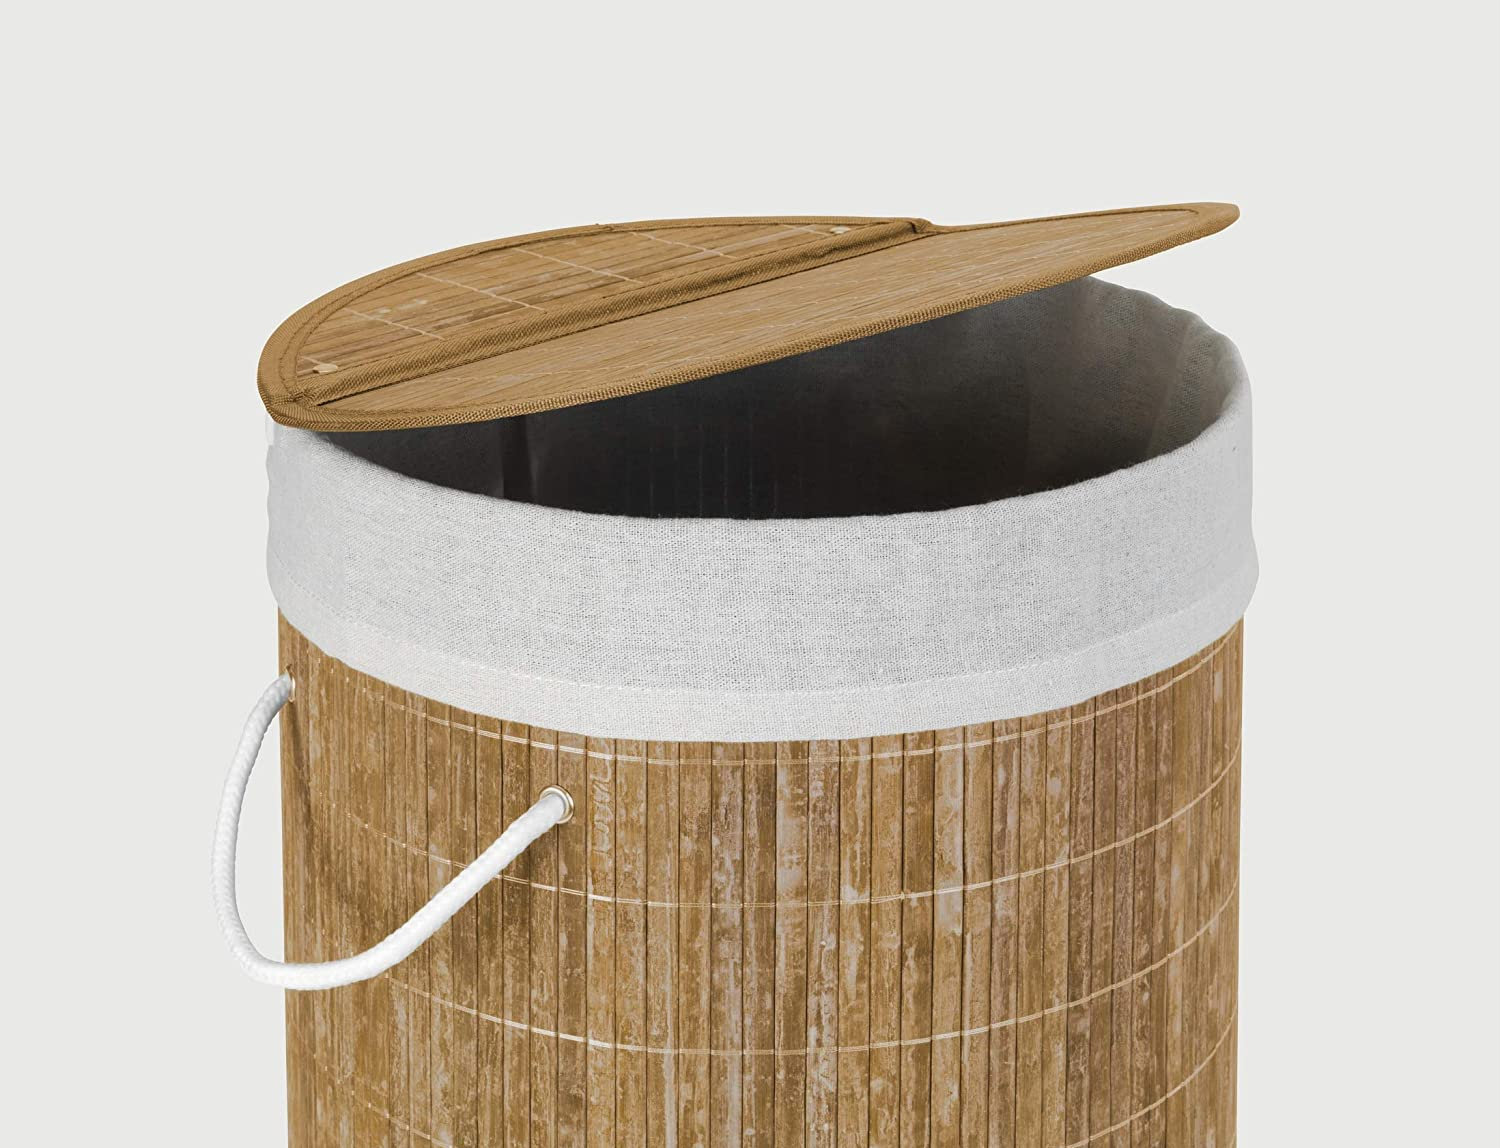 Wäschetruhe Bamboo Natur - Wäschekorb, mit Wäschesack Fassungsvermögen: 55 l, Bambus, 35 x 60 x 35 cm, natur